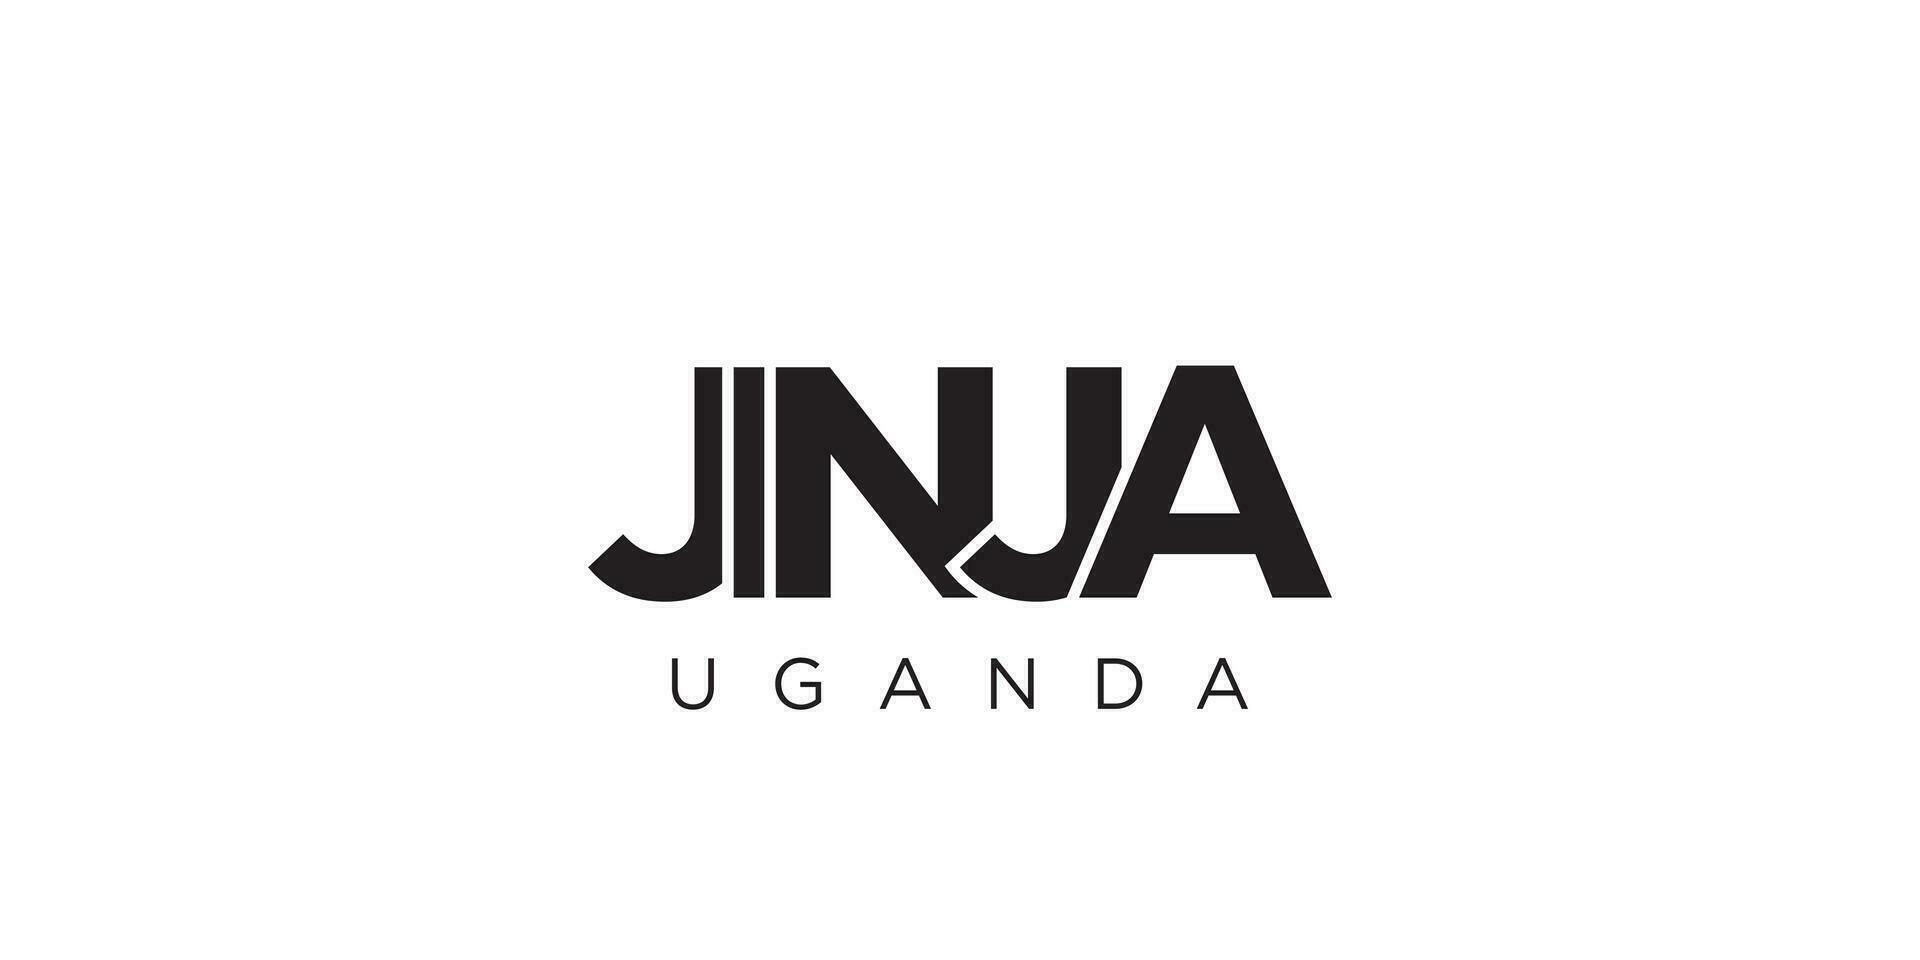 Jinja dans le Ouganda emblème. le conception Caractéristiques une géométrique style, vecteur illustration avec audacieux typographie dans une moderne Police de caractère. le graphique slogan caractères.